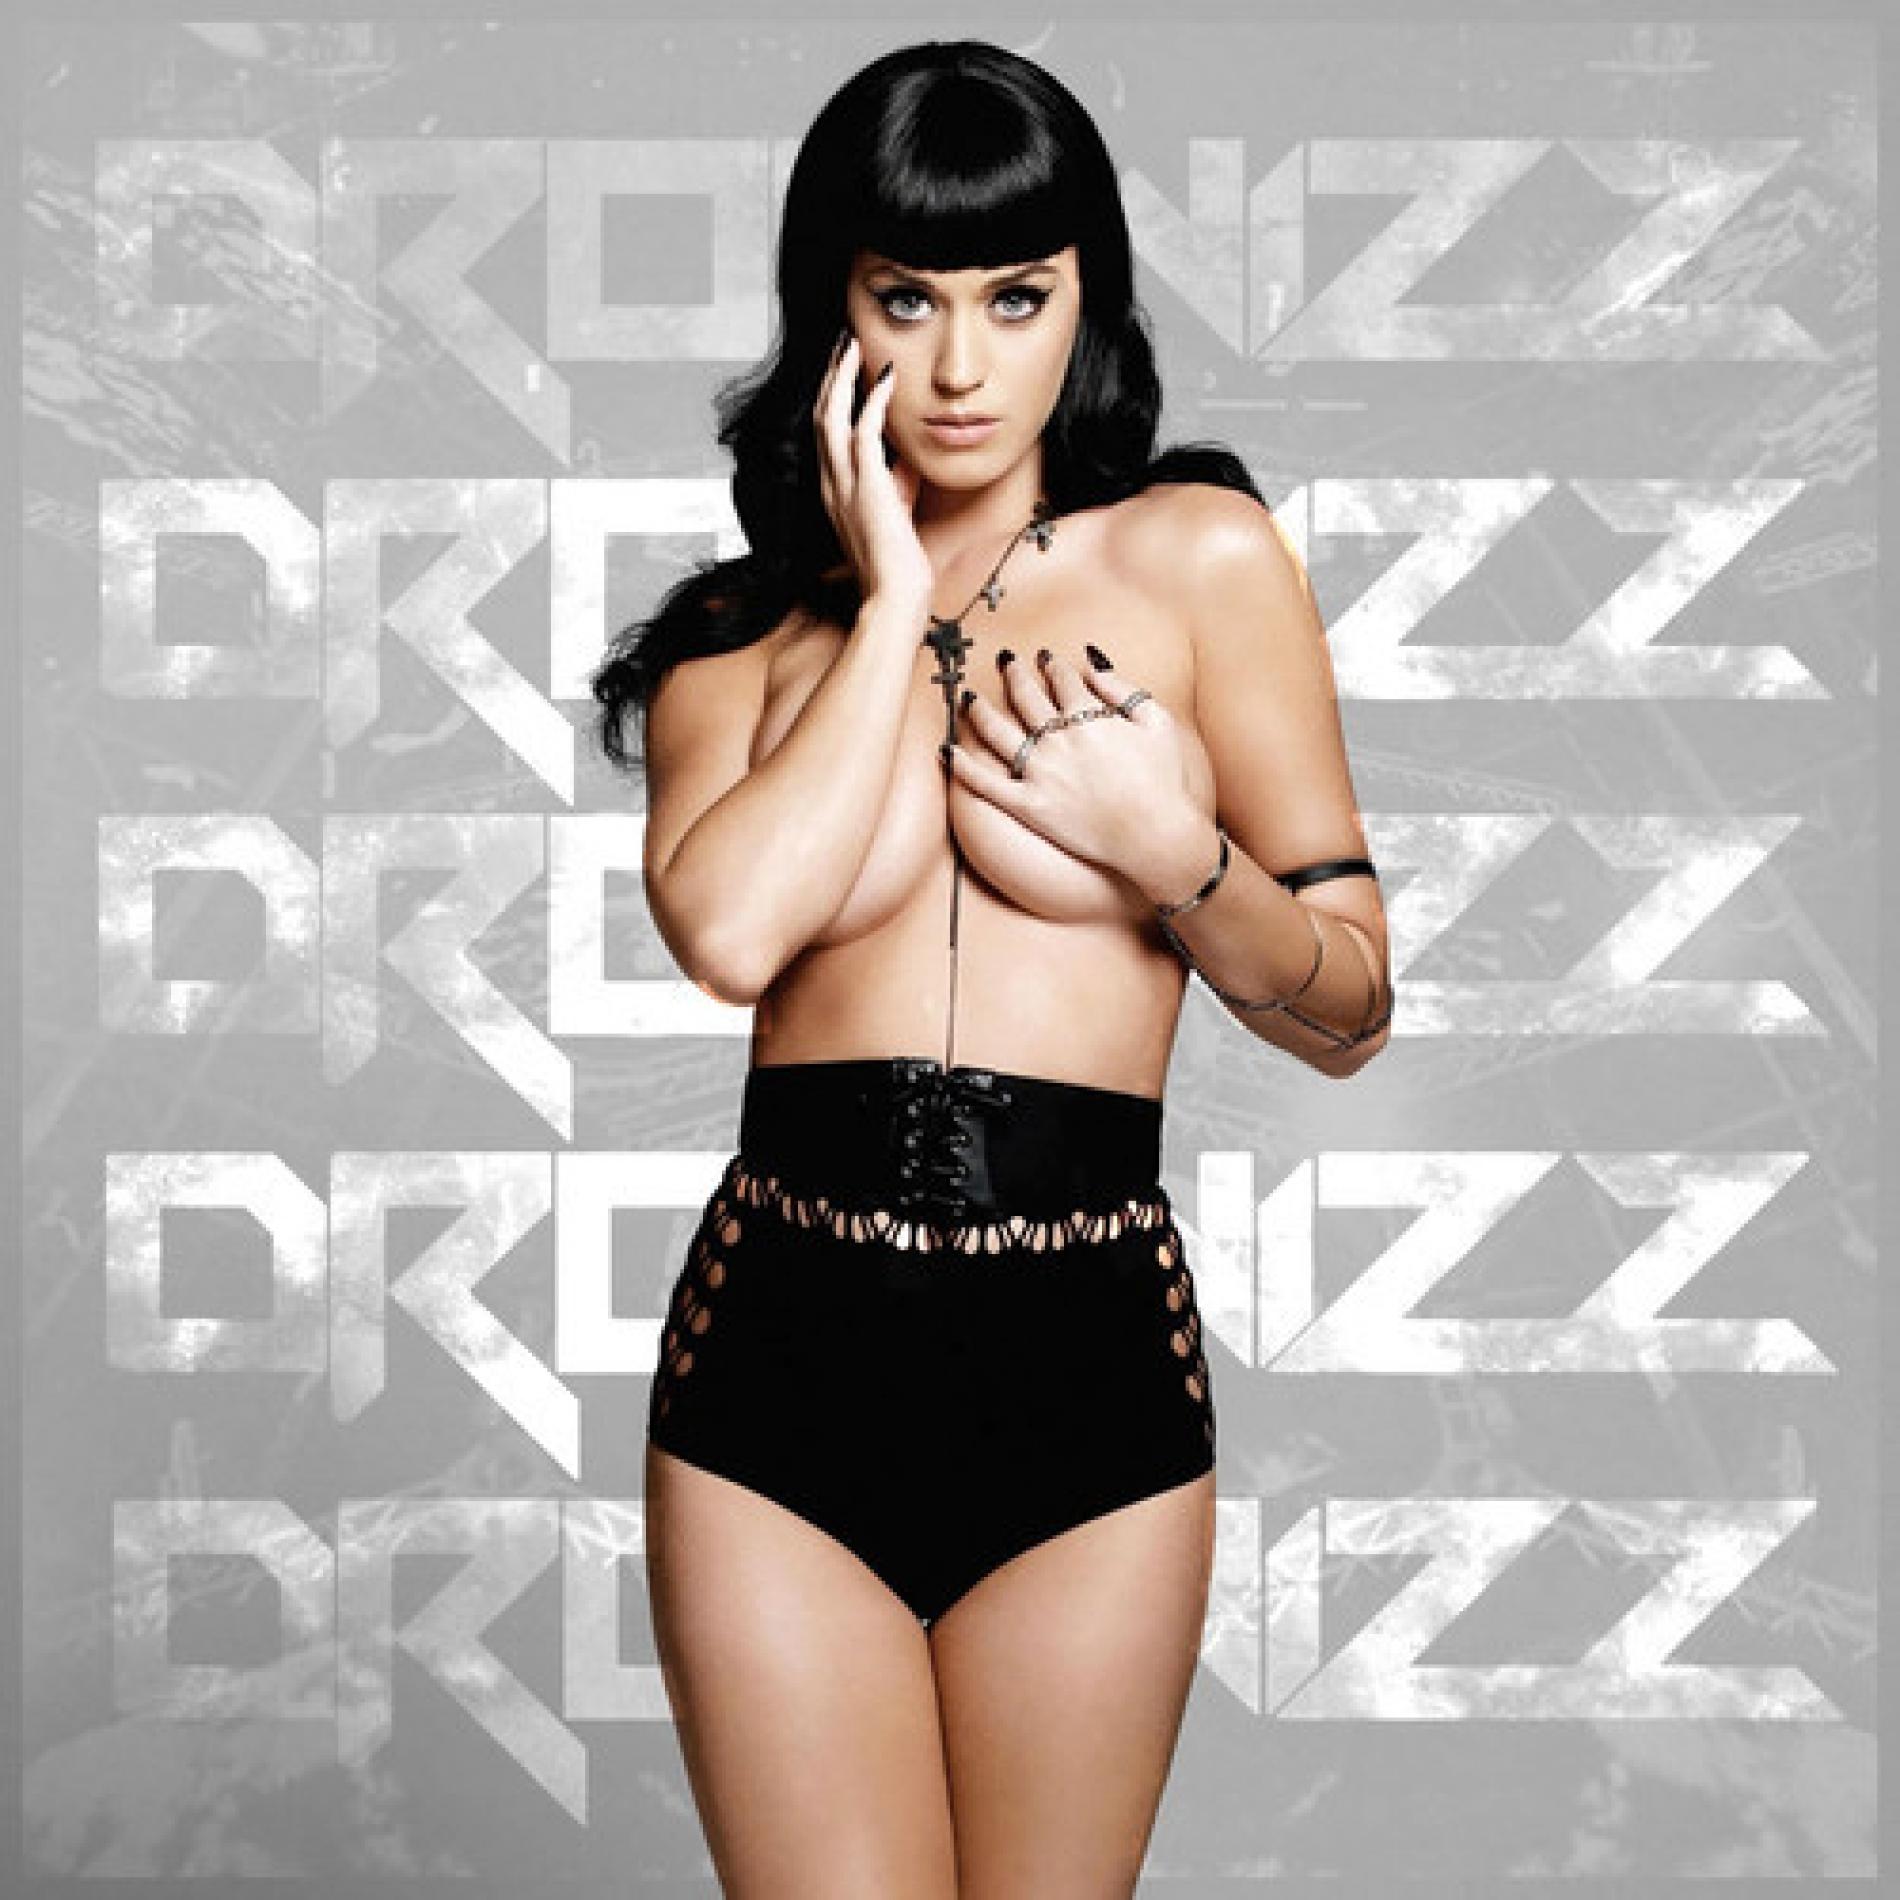 Dropwizz – Katy Perry – This Is How We Do (Dropwizz Club Mix)